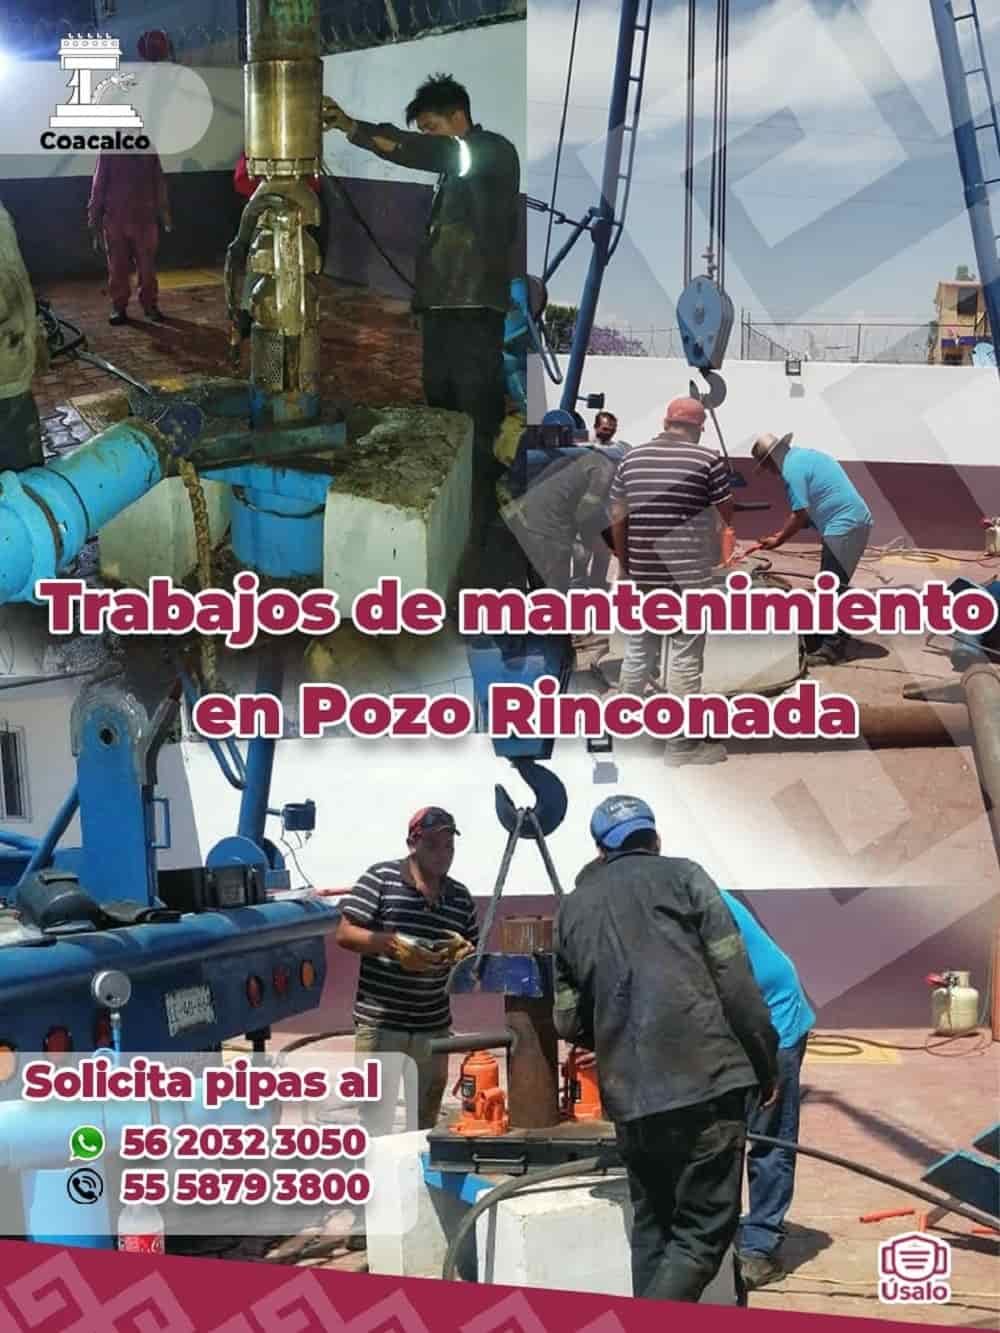 Rehabilitan pozos de agua potable en Coacalco